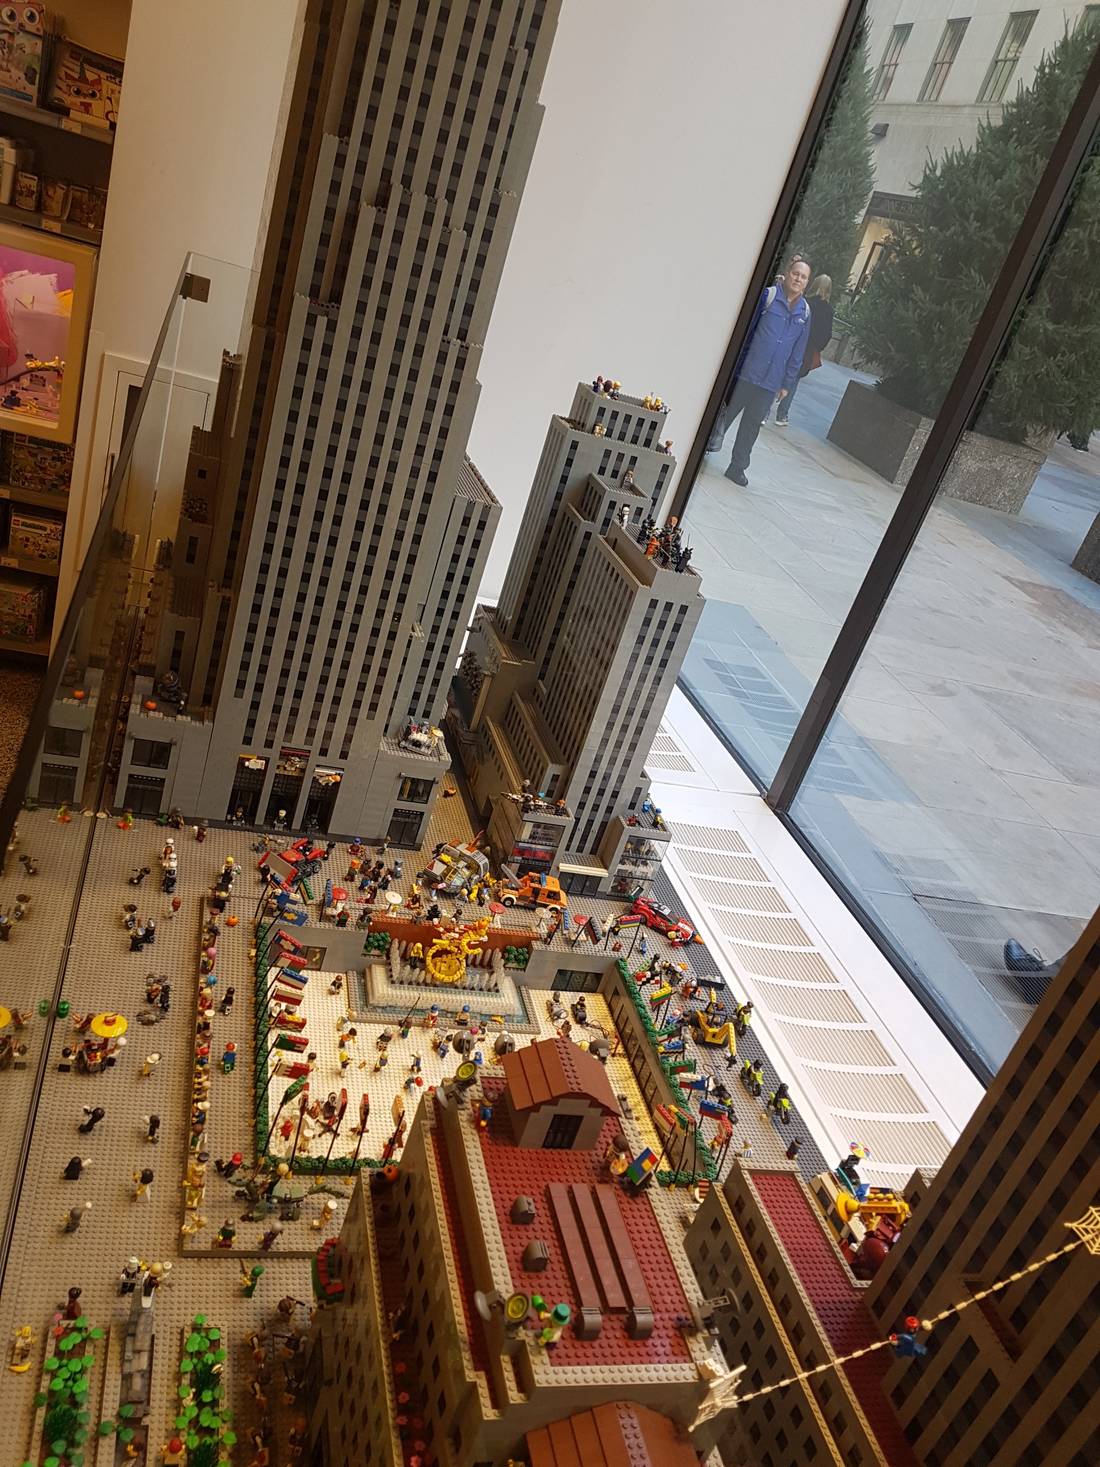 Lego model of the Rockefeller Centre